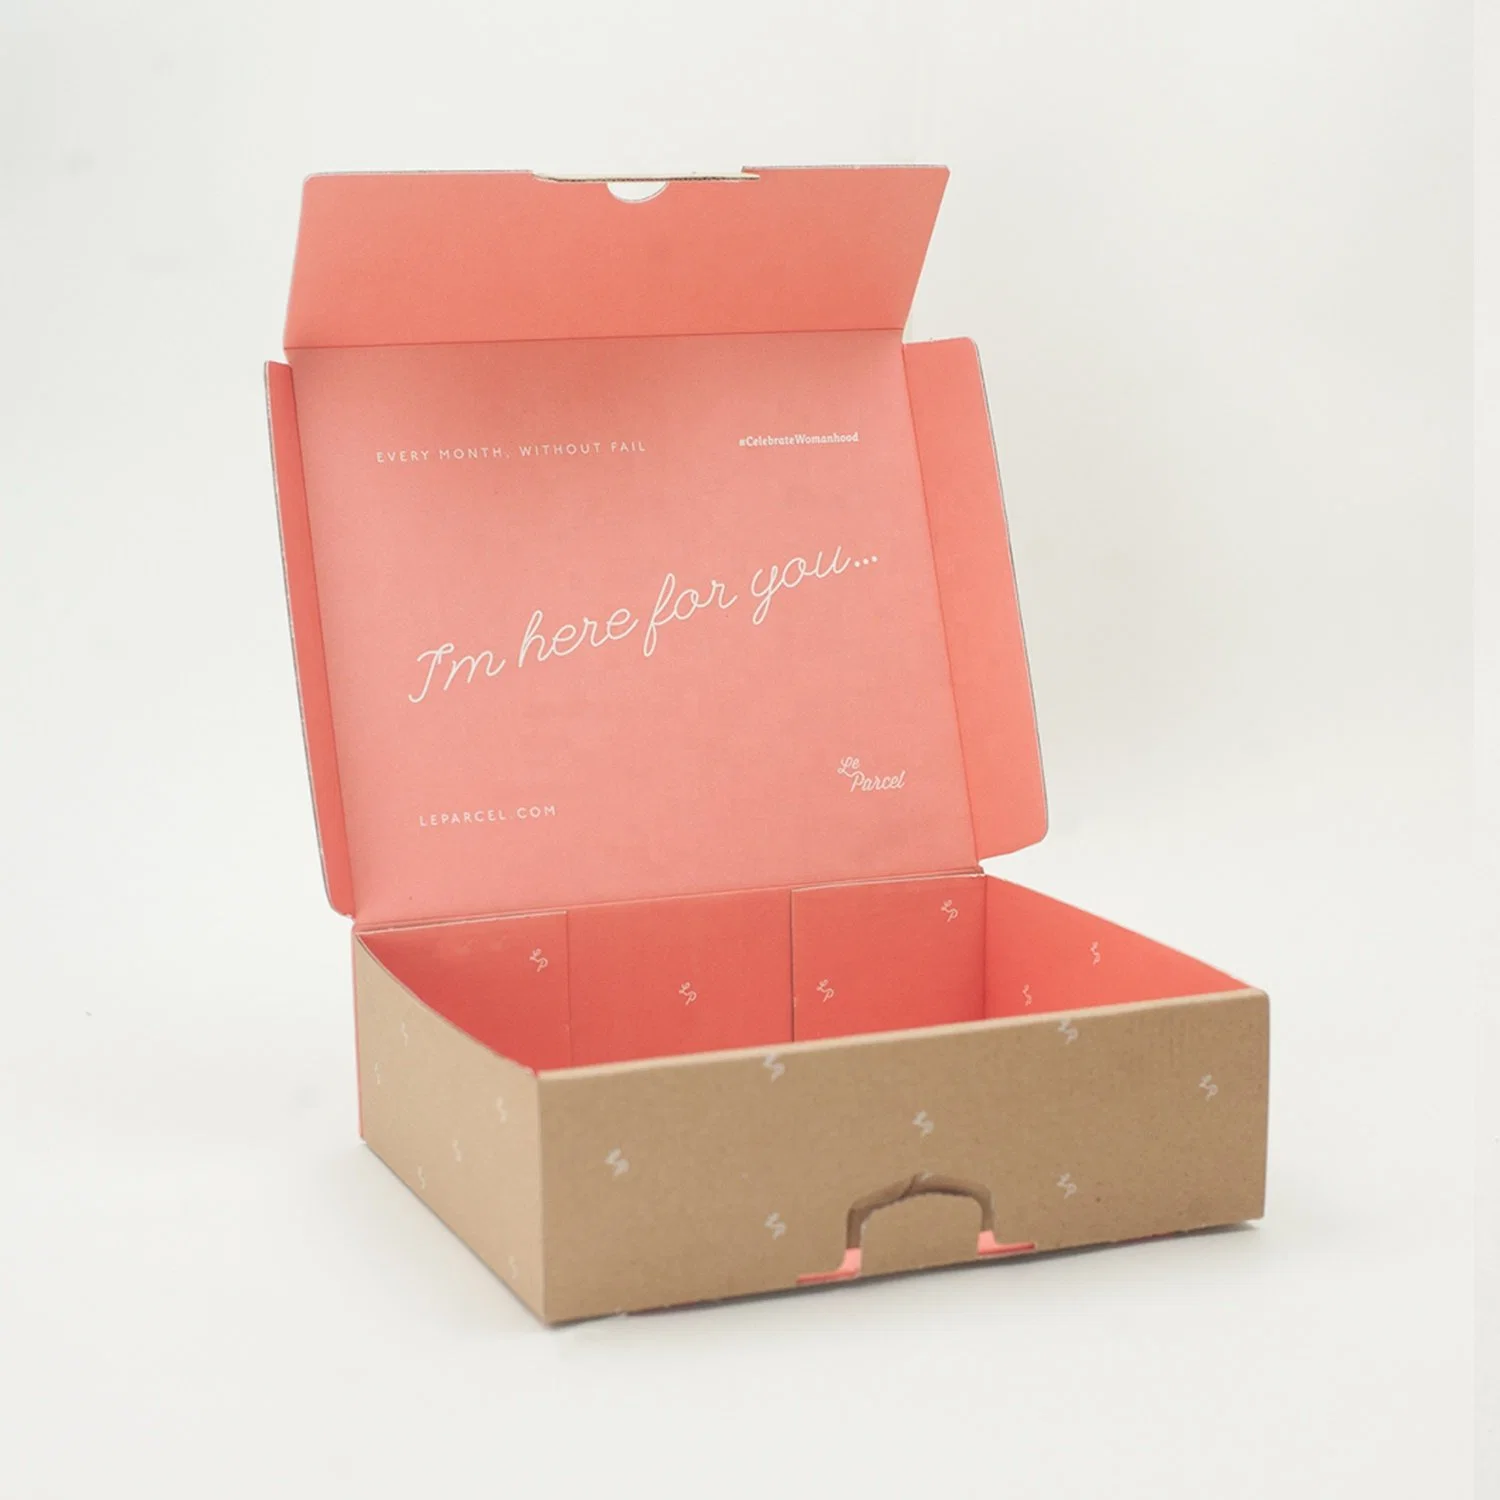 Embalagem de caixa de correio impressa com logótipo personalizado Hot Pink para embalagem de produtos e-Commerce, caixa de envio personalizada para impressão de caixas de correio